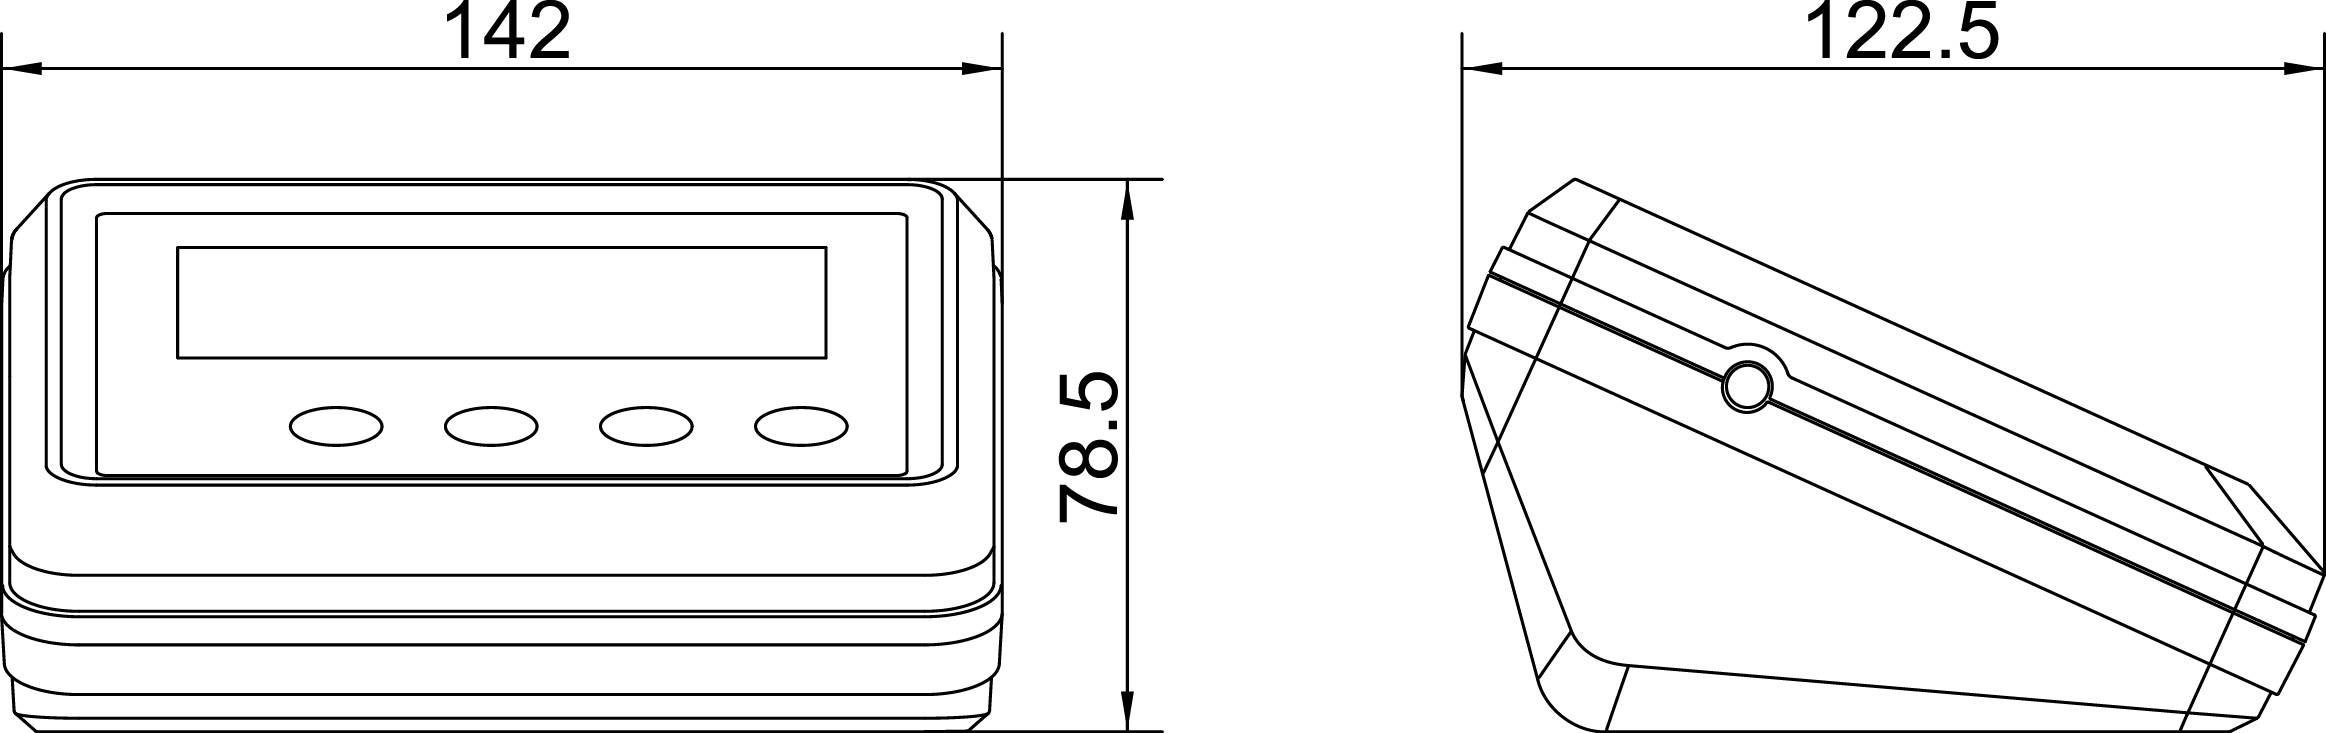 XK3190-T12E仪表图纸